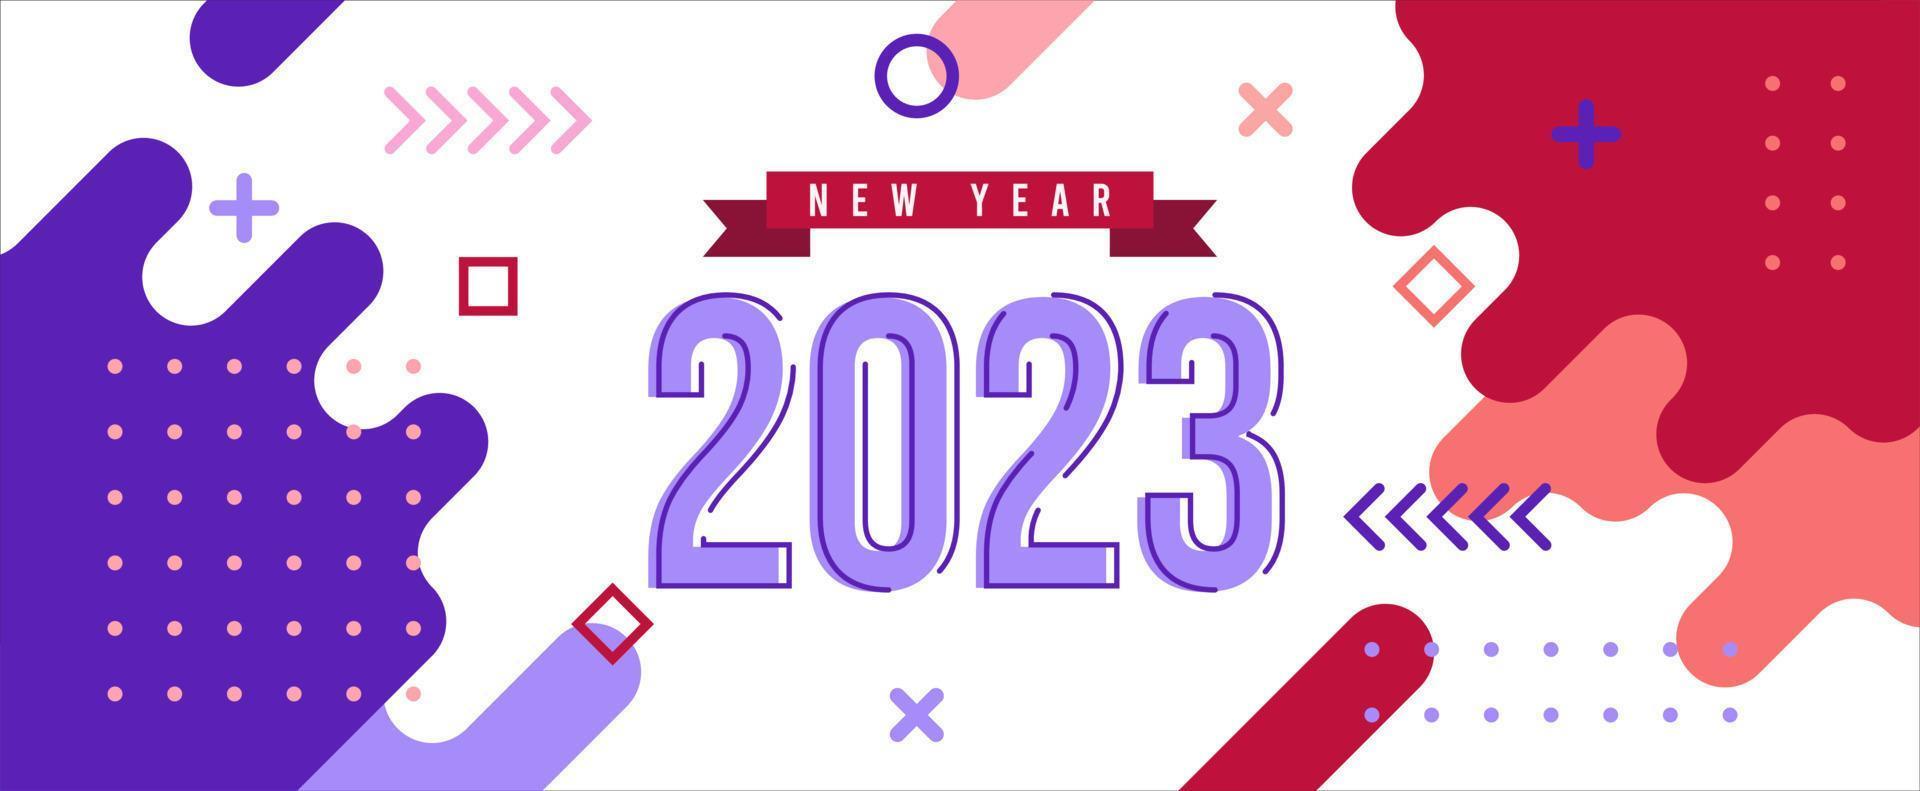 banner de ano novo 2023 com fundo abstrato geométrico moderno. feliz ano novo design de cartão para o ano de 2023 vetor